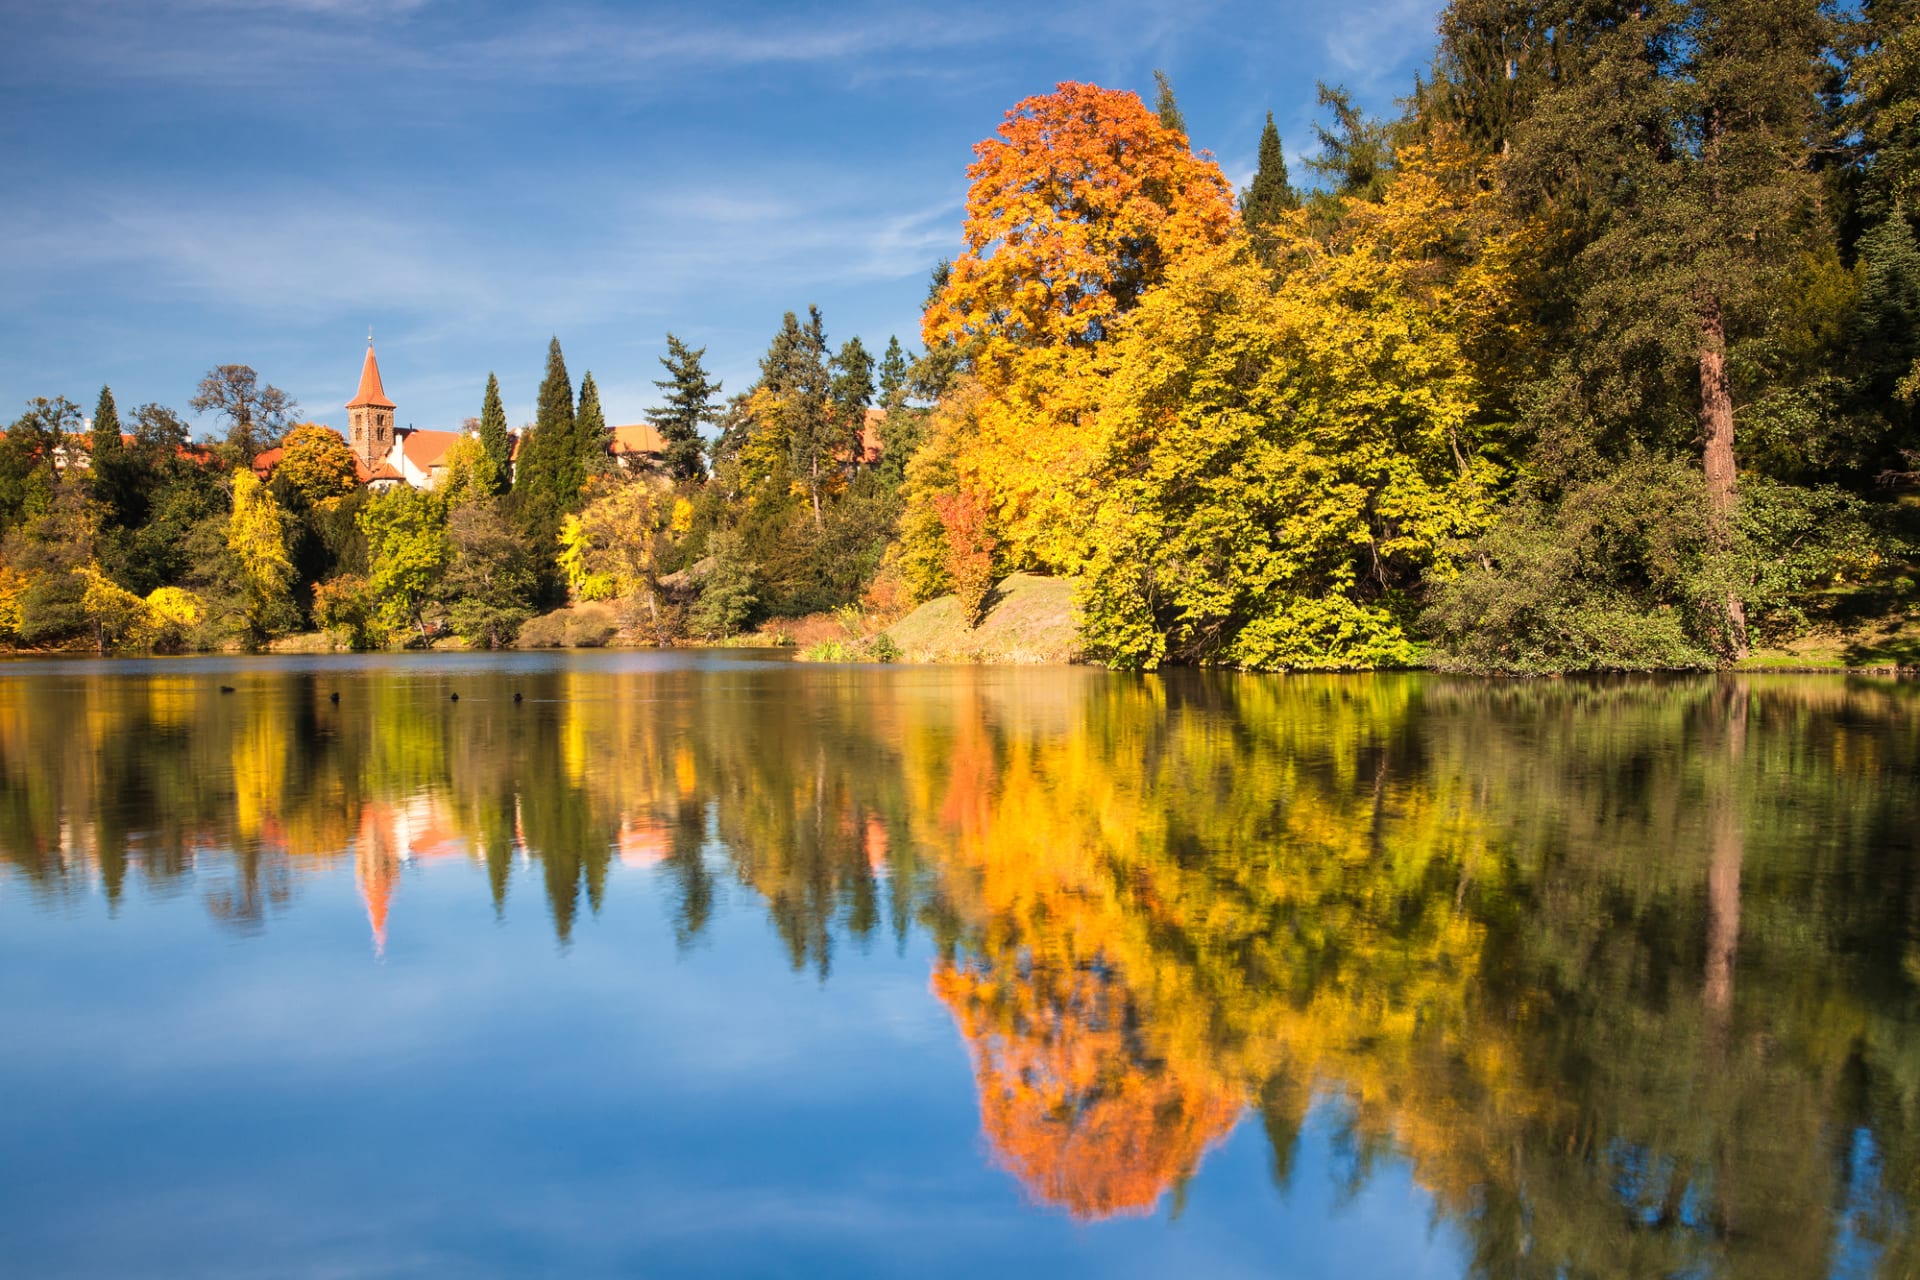 Nádherná podzimní příroda parku se dokonale odráží na hladině jezera